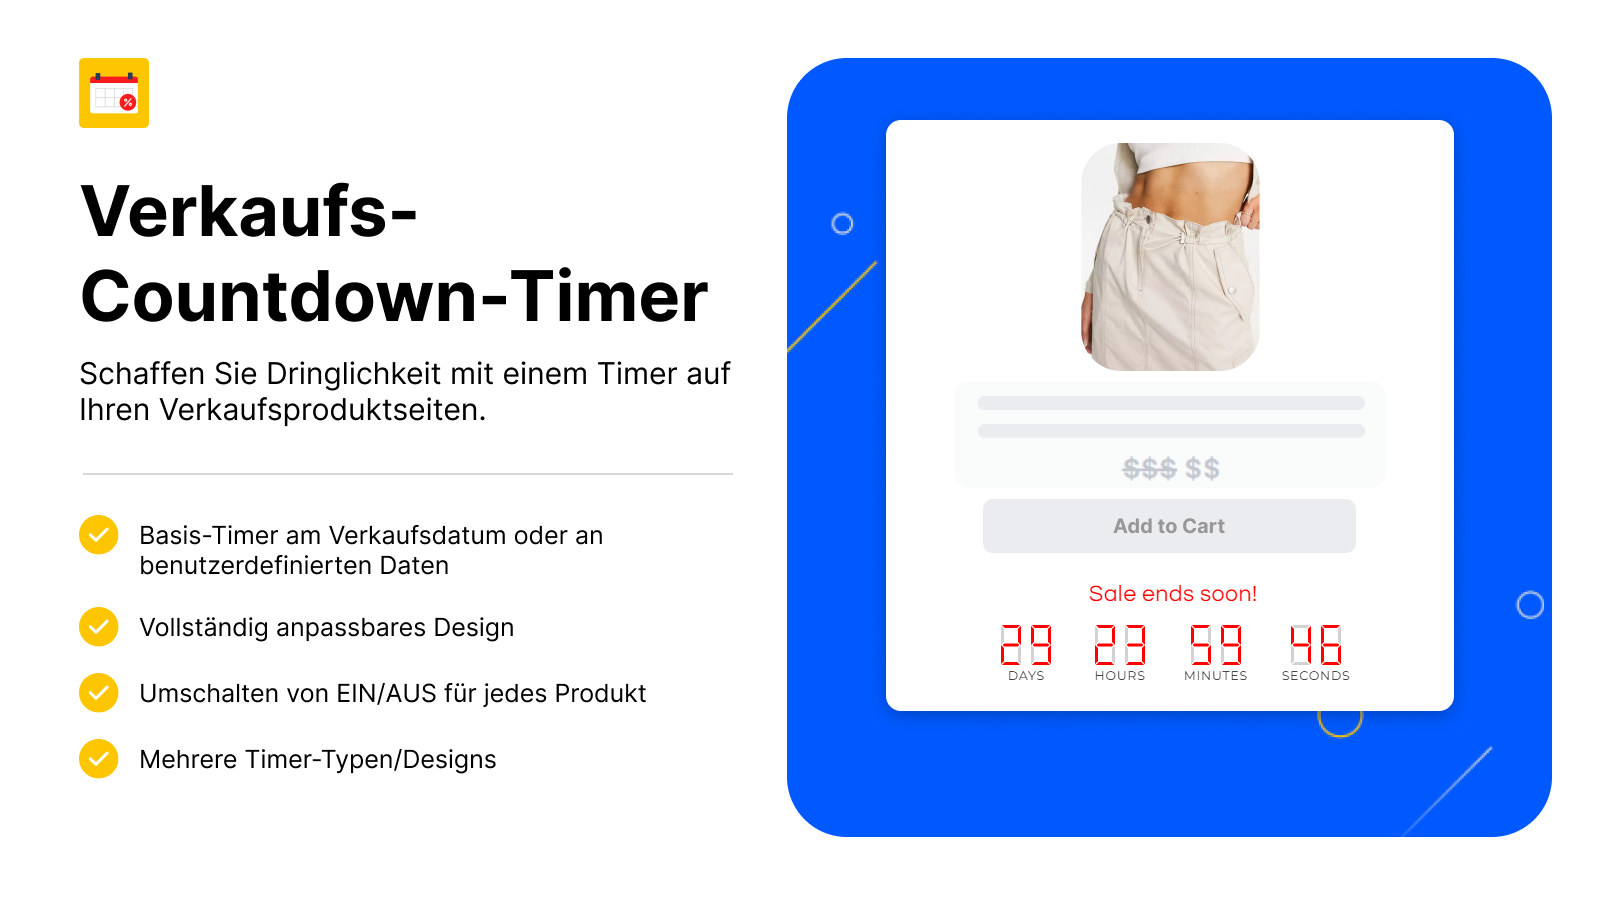 Verkaufs-Countdown-Timer